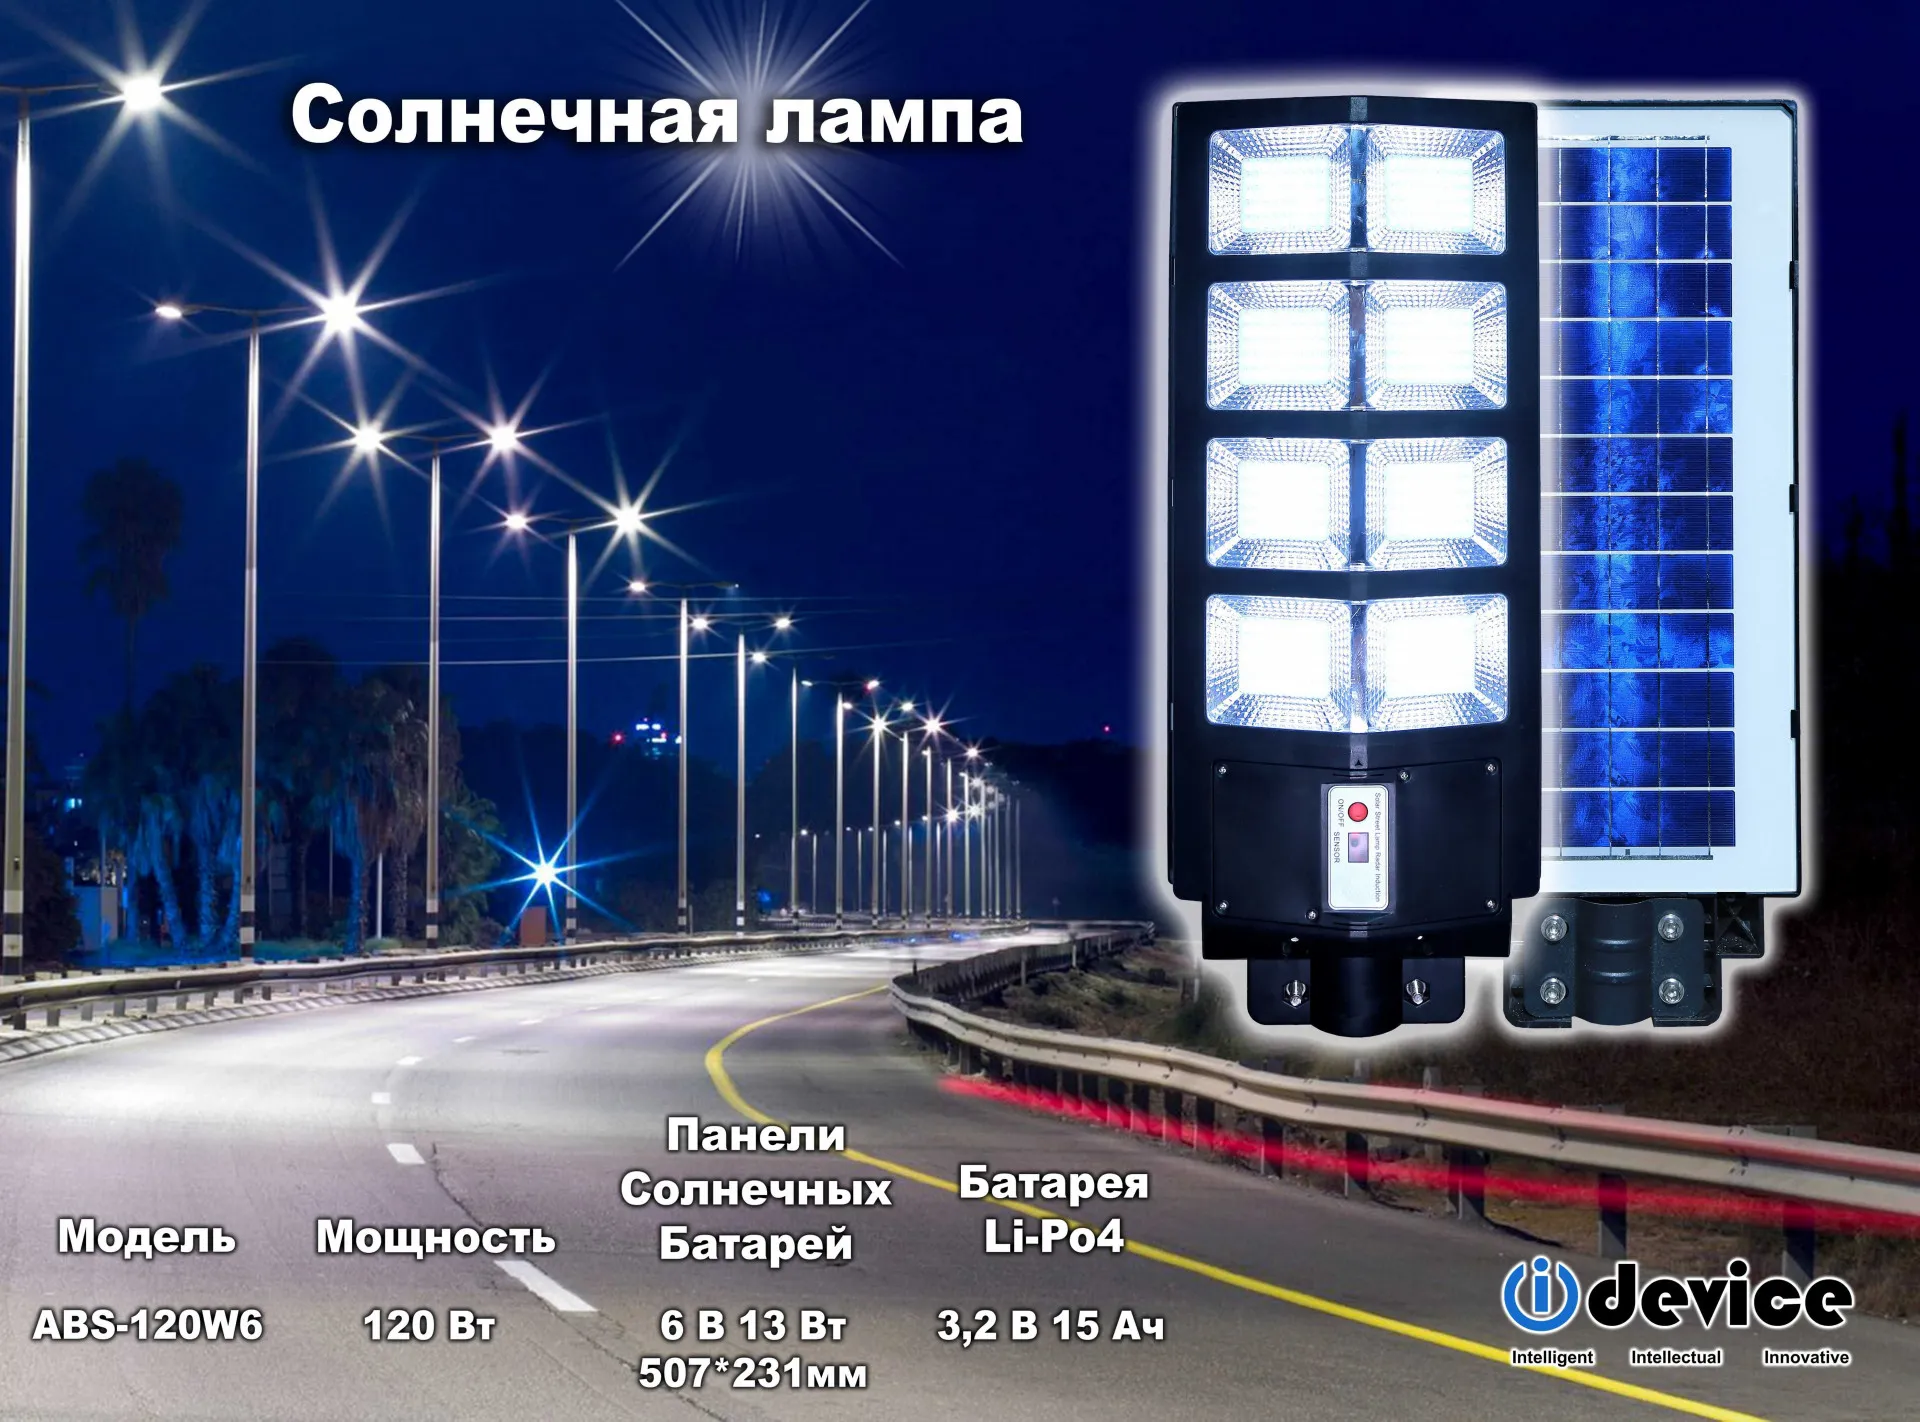 Солнечный уличный светильник. Модель: TDP 90, 100, 150, 200, 240 300, 400 W, : от 90ватт до 400 Ватт,#1